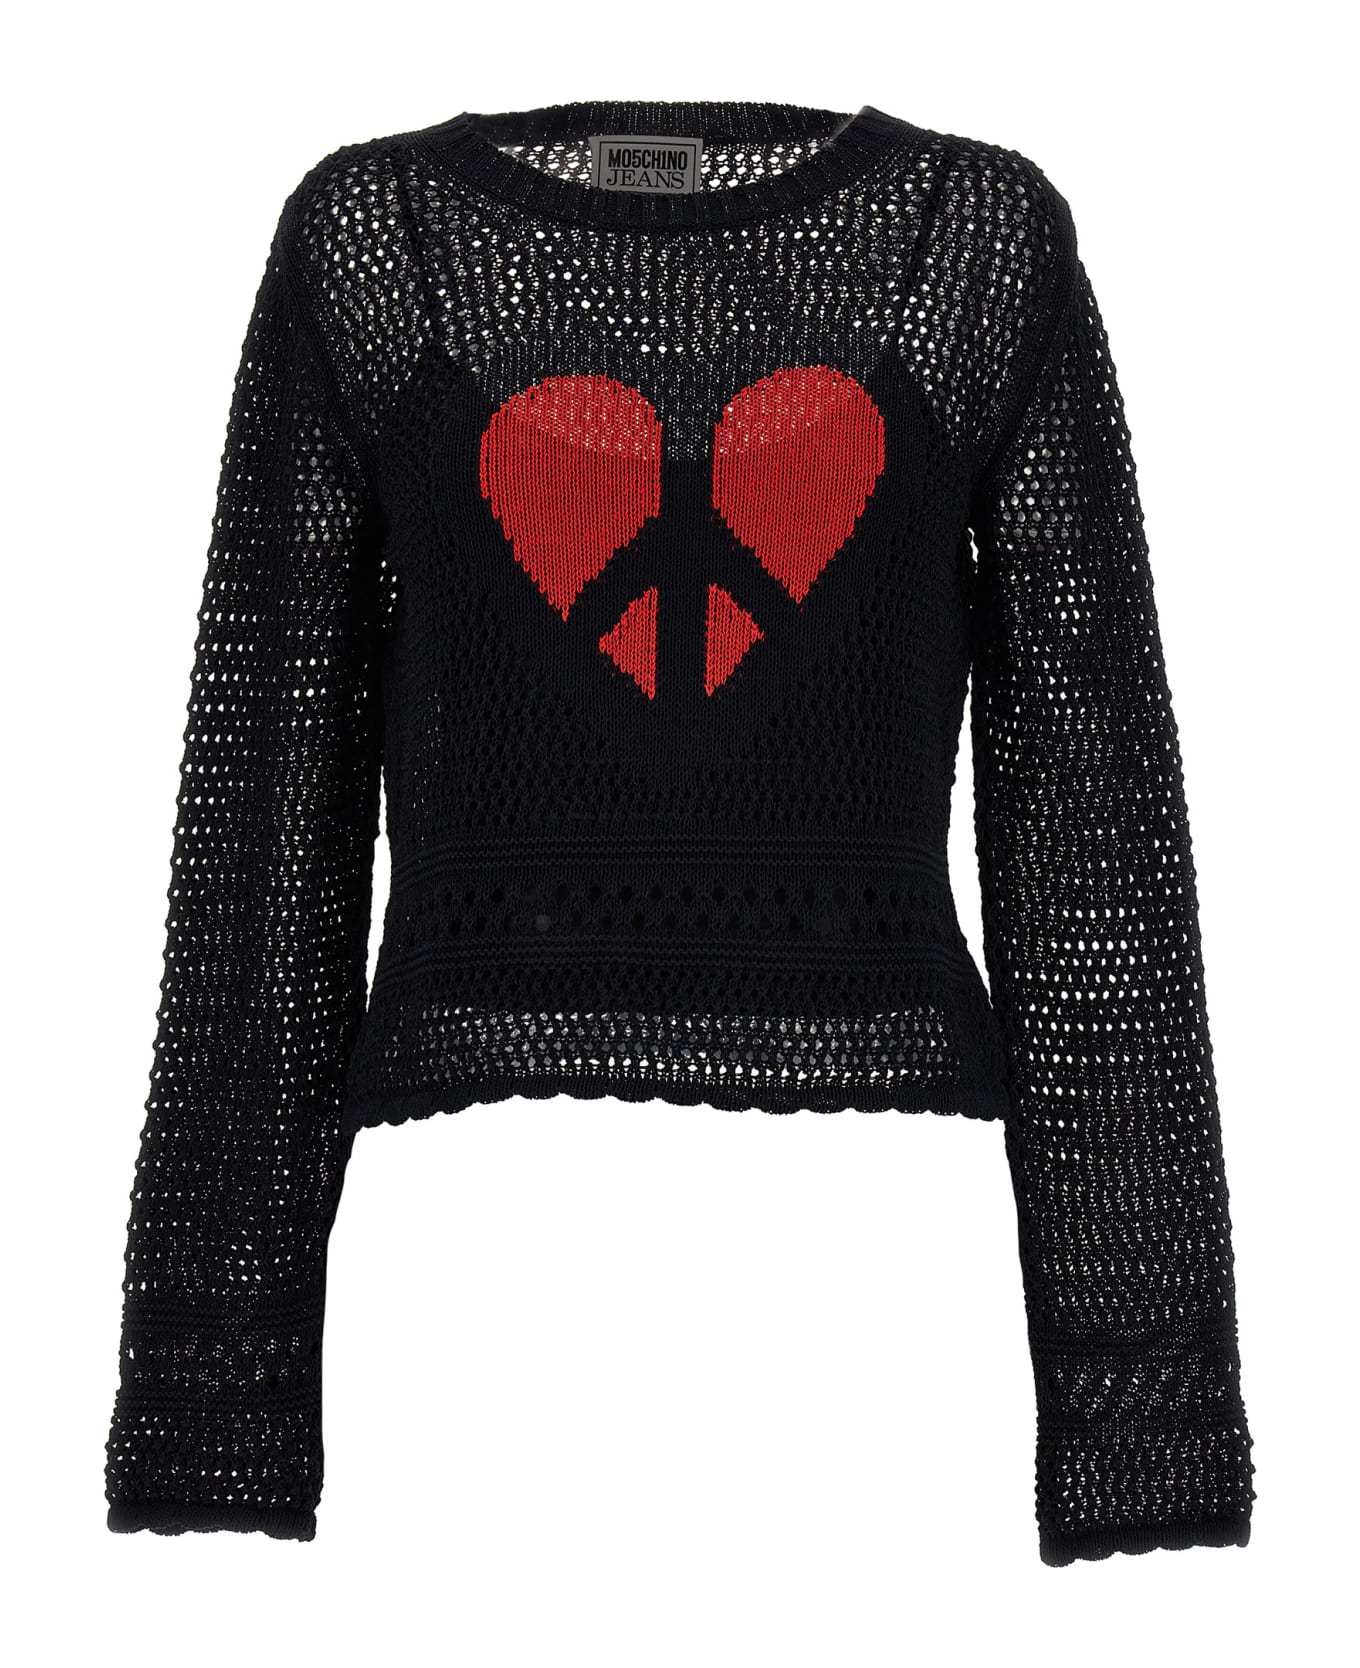 M05CH1N0 Jeans Crochet Sweater - Black  